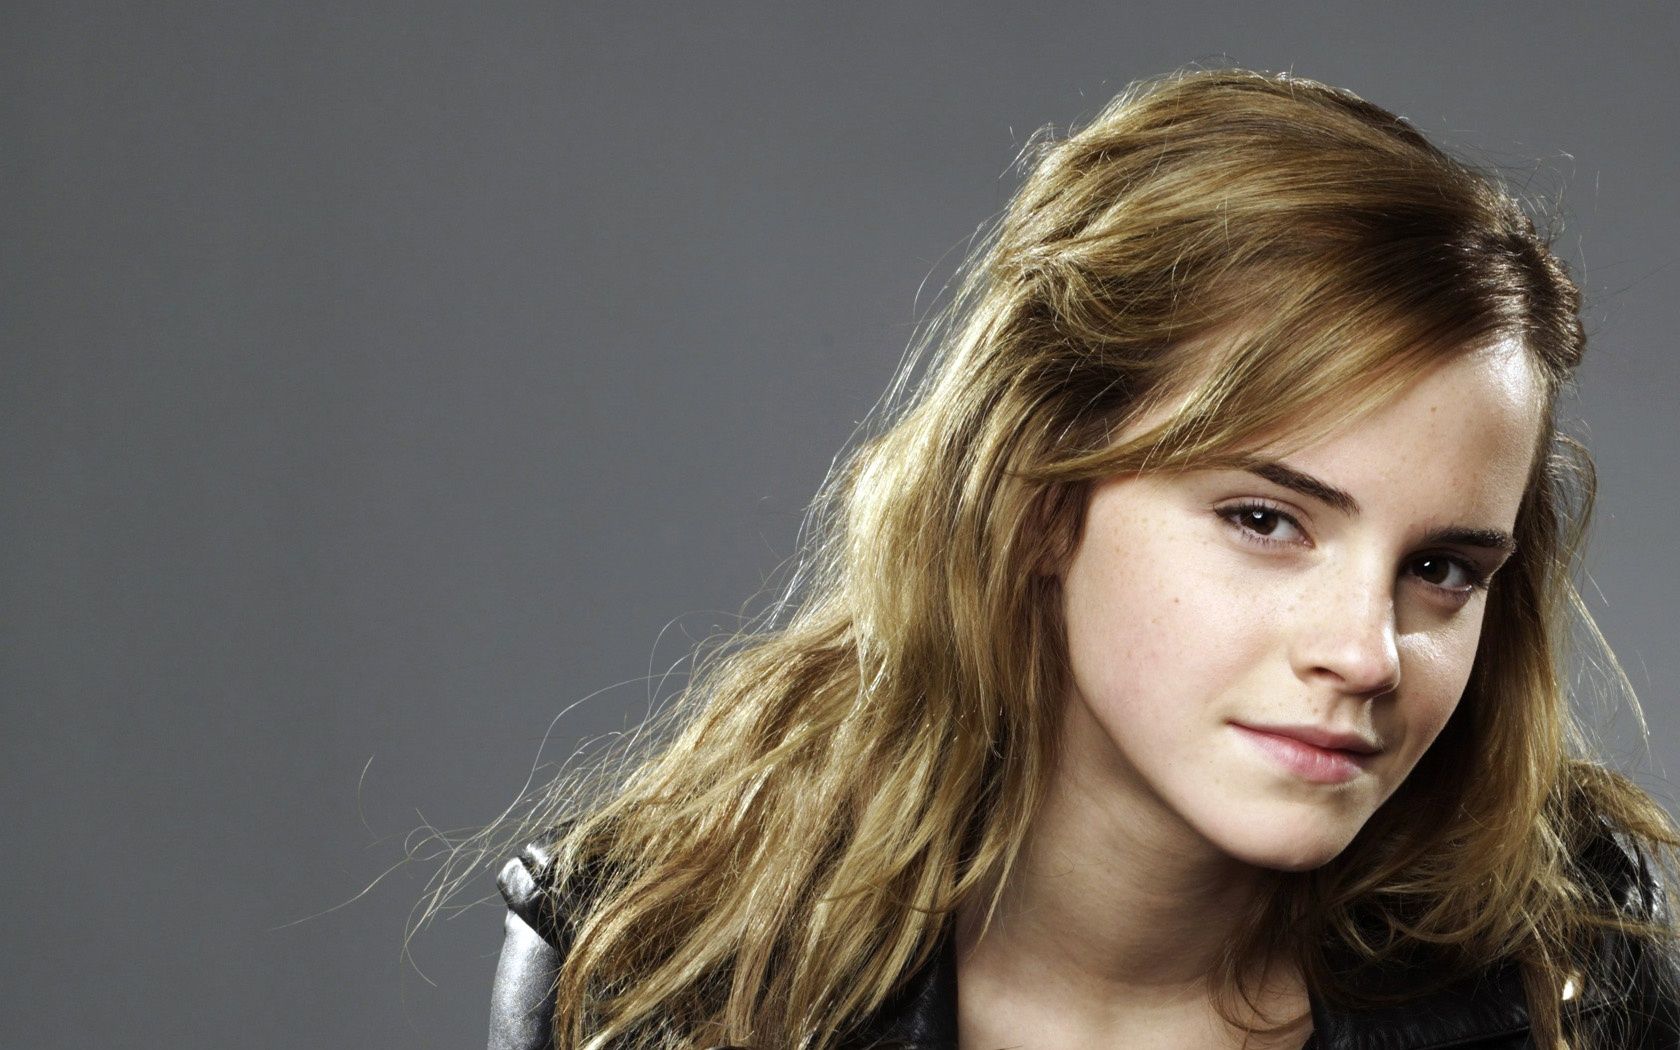 Emma Watson cutest girl in hollywood - HDwallpaper4U.com